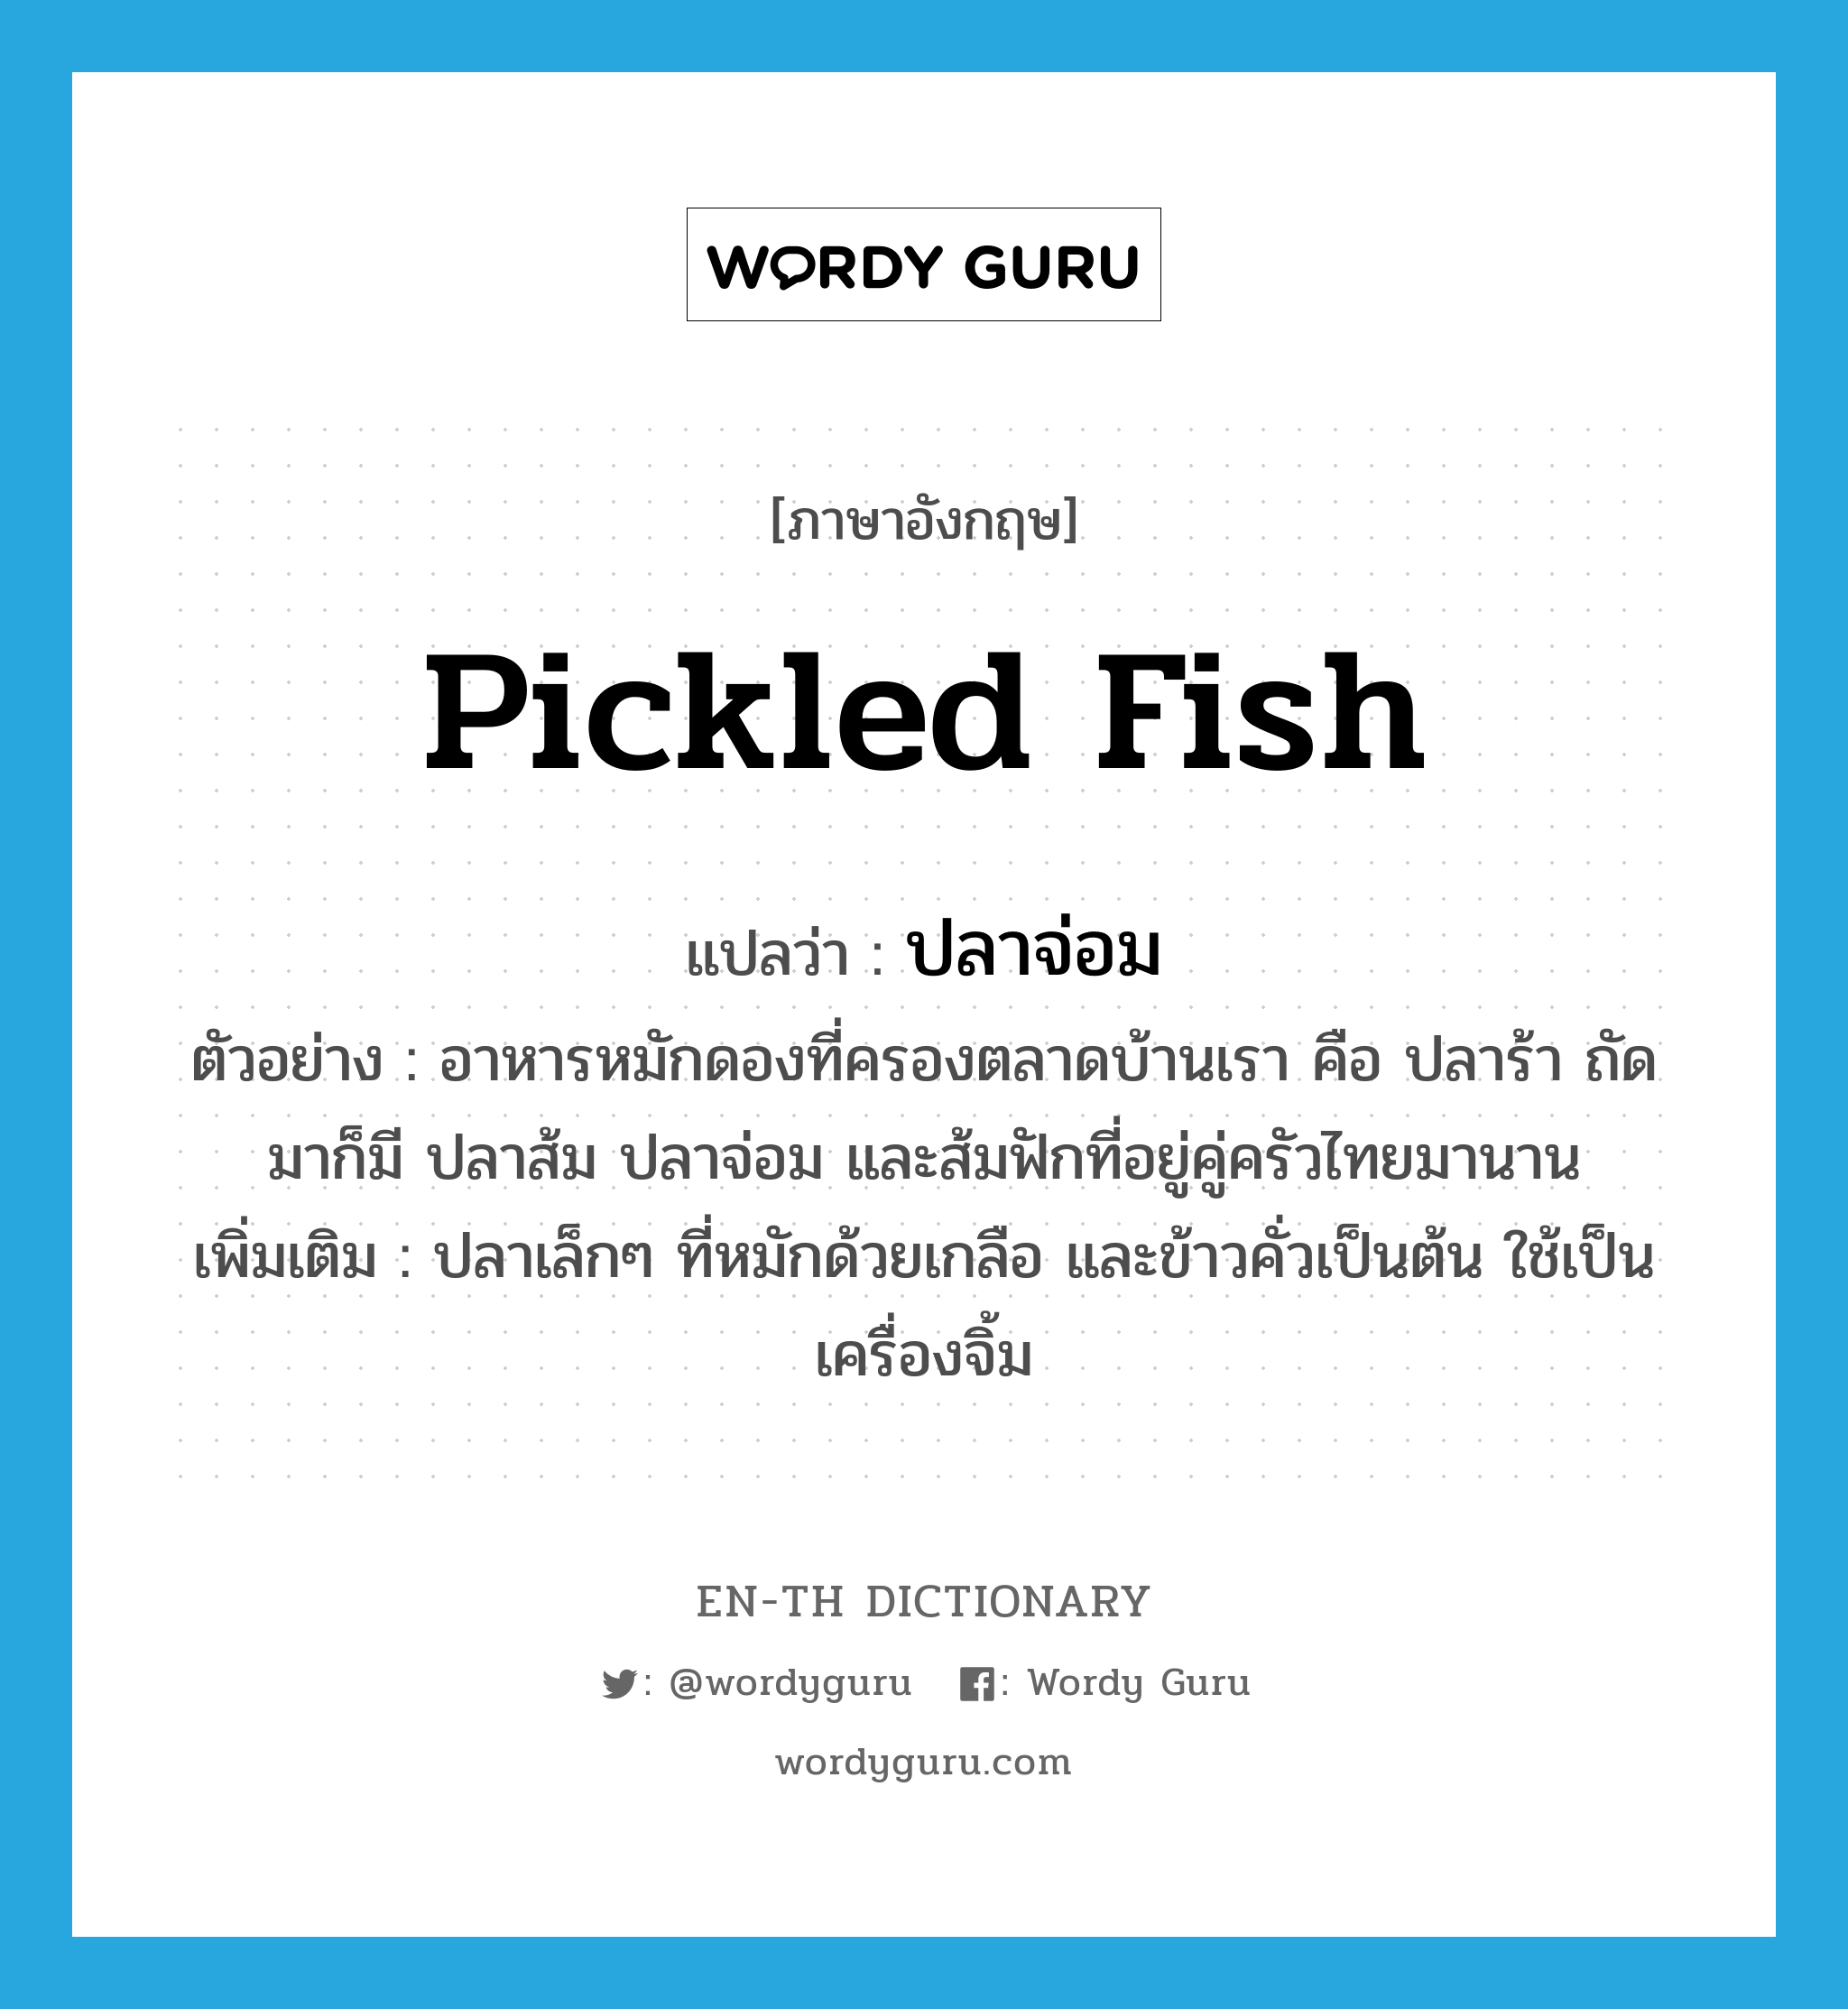 ปลาจ่อม ภาษาอังกฤษ?, คำศัพท์ภาษาอังกฤษ ปลาจ่อม แปลว่า pickled fish ประเภท N ตัวอย่าง อาหารหมักดองที่ครองตลาดบ้านเรา คือ ปลาร้า ถัดมาก็มี ปลาส้ม ปลาจ่อม และส้มฟักที่อยู่คู่ครัวไทยมานาน เพิ่มเติม ปลาเล็กๆ ที่หมักด้วยเกลือ และข้าวคั่วเป็นต้น ใช้เป็นเครื่องจิ้ม หมวด N